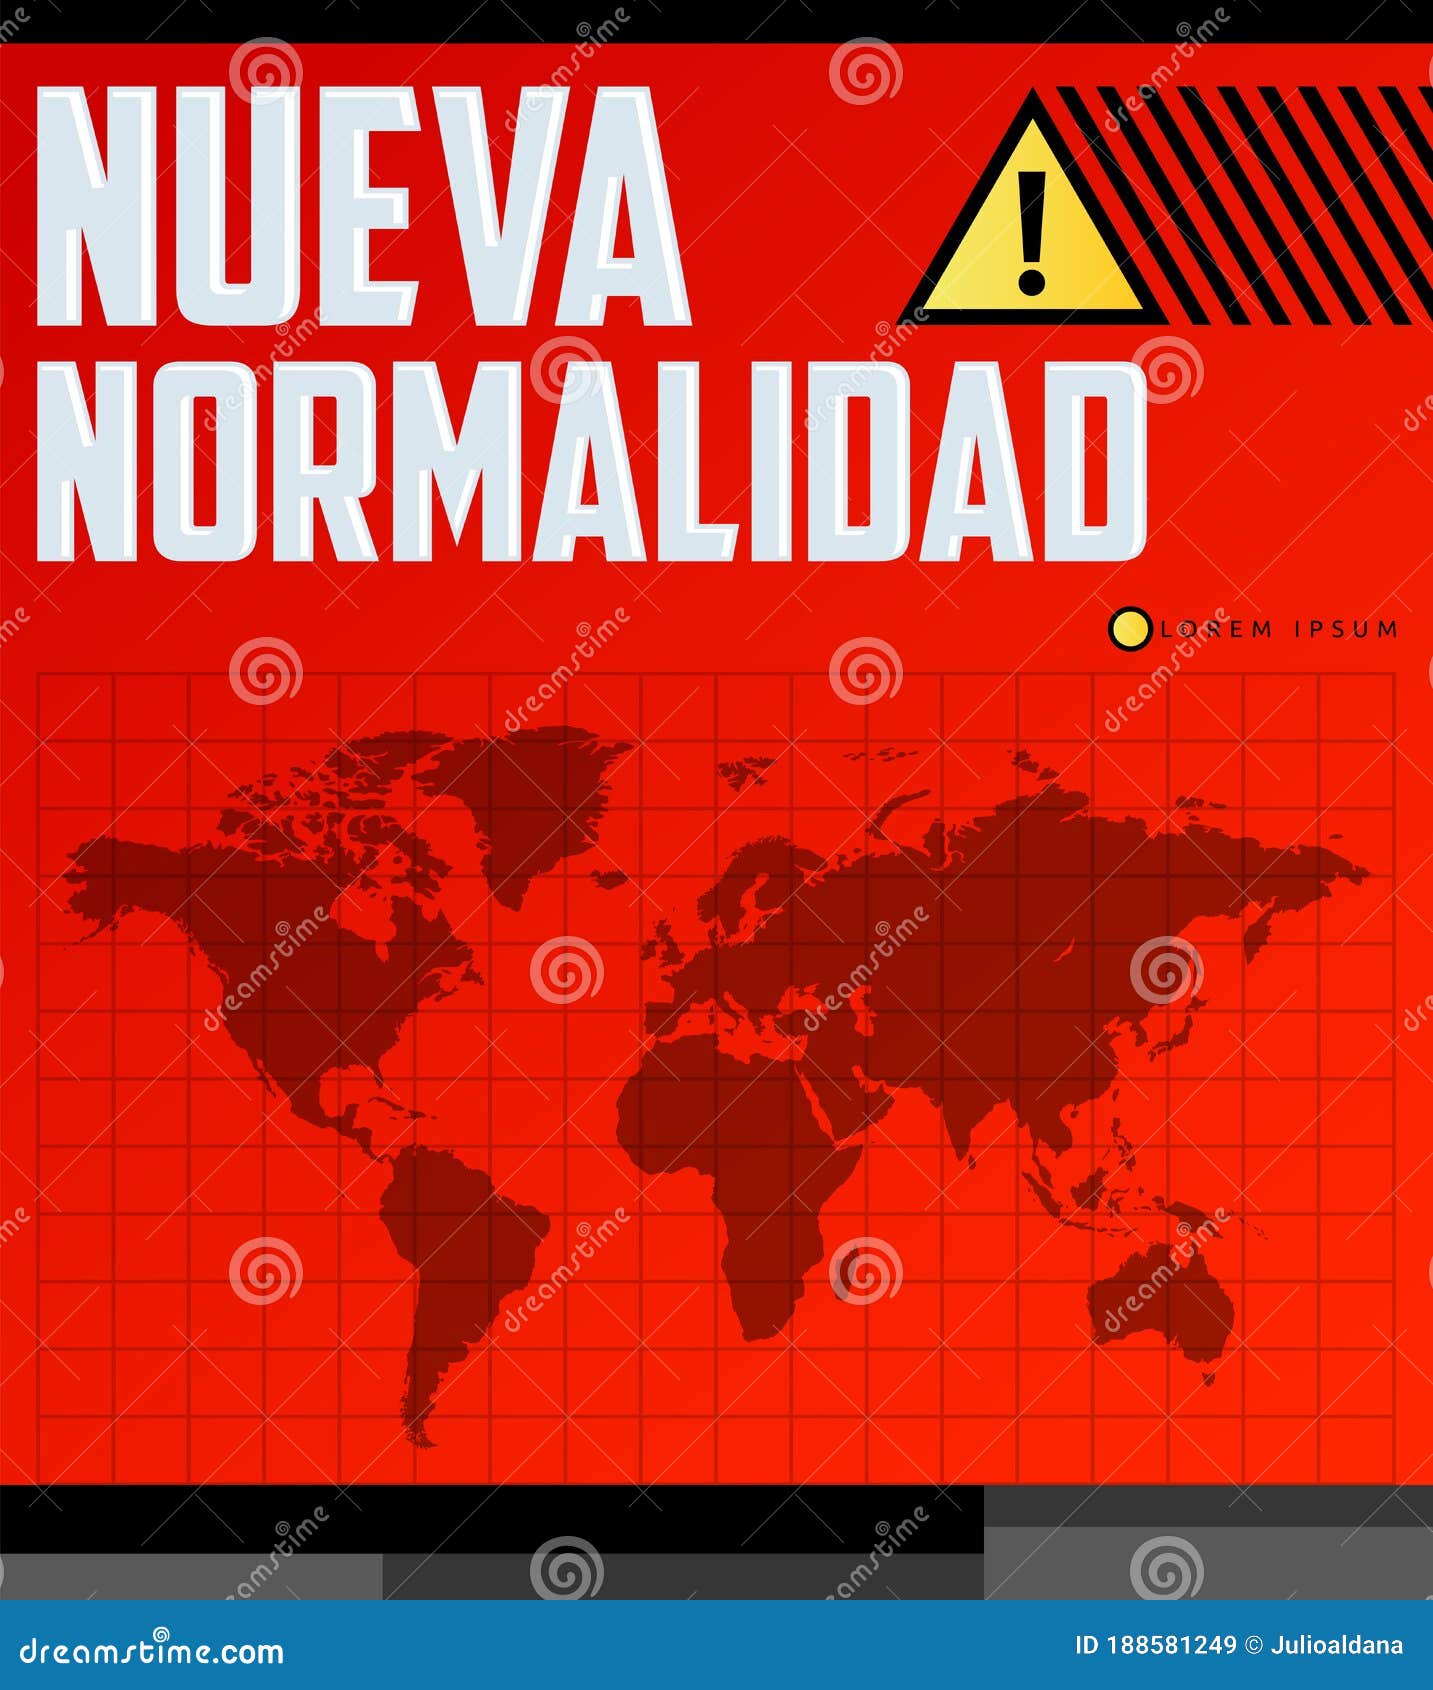 nueva normalidad, new normal spanish text,  .